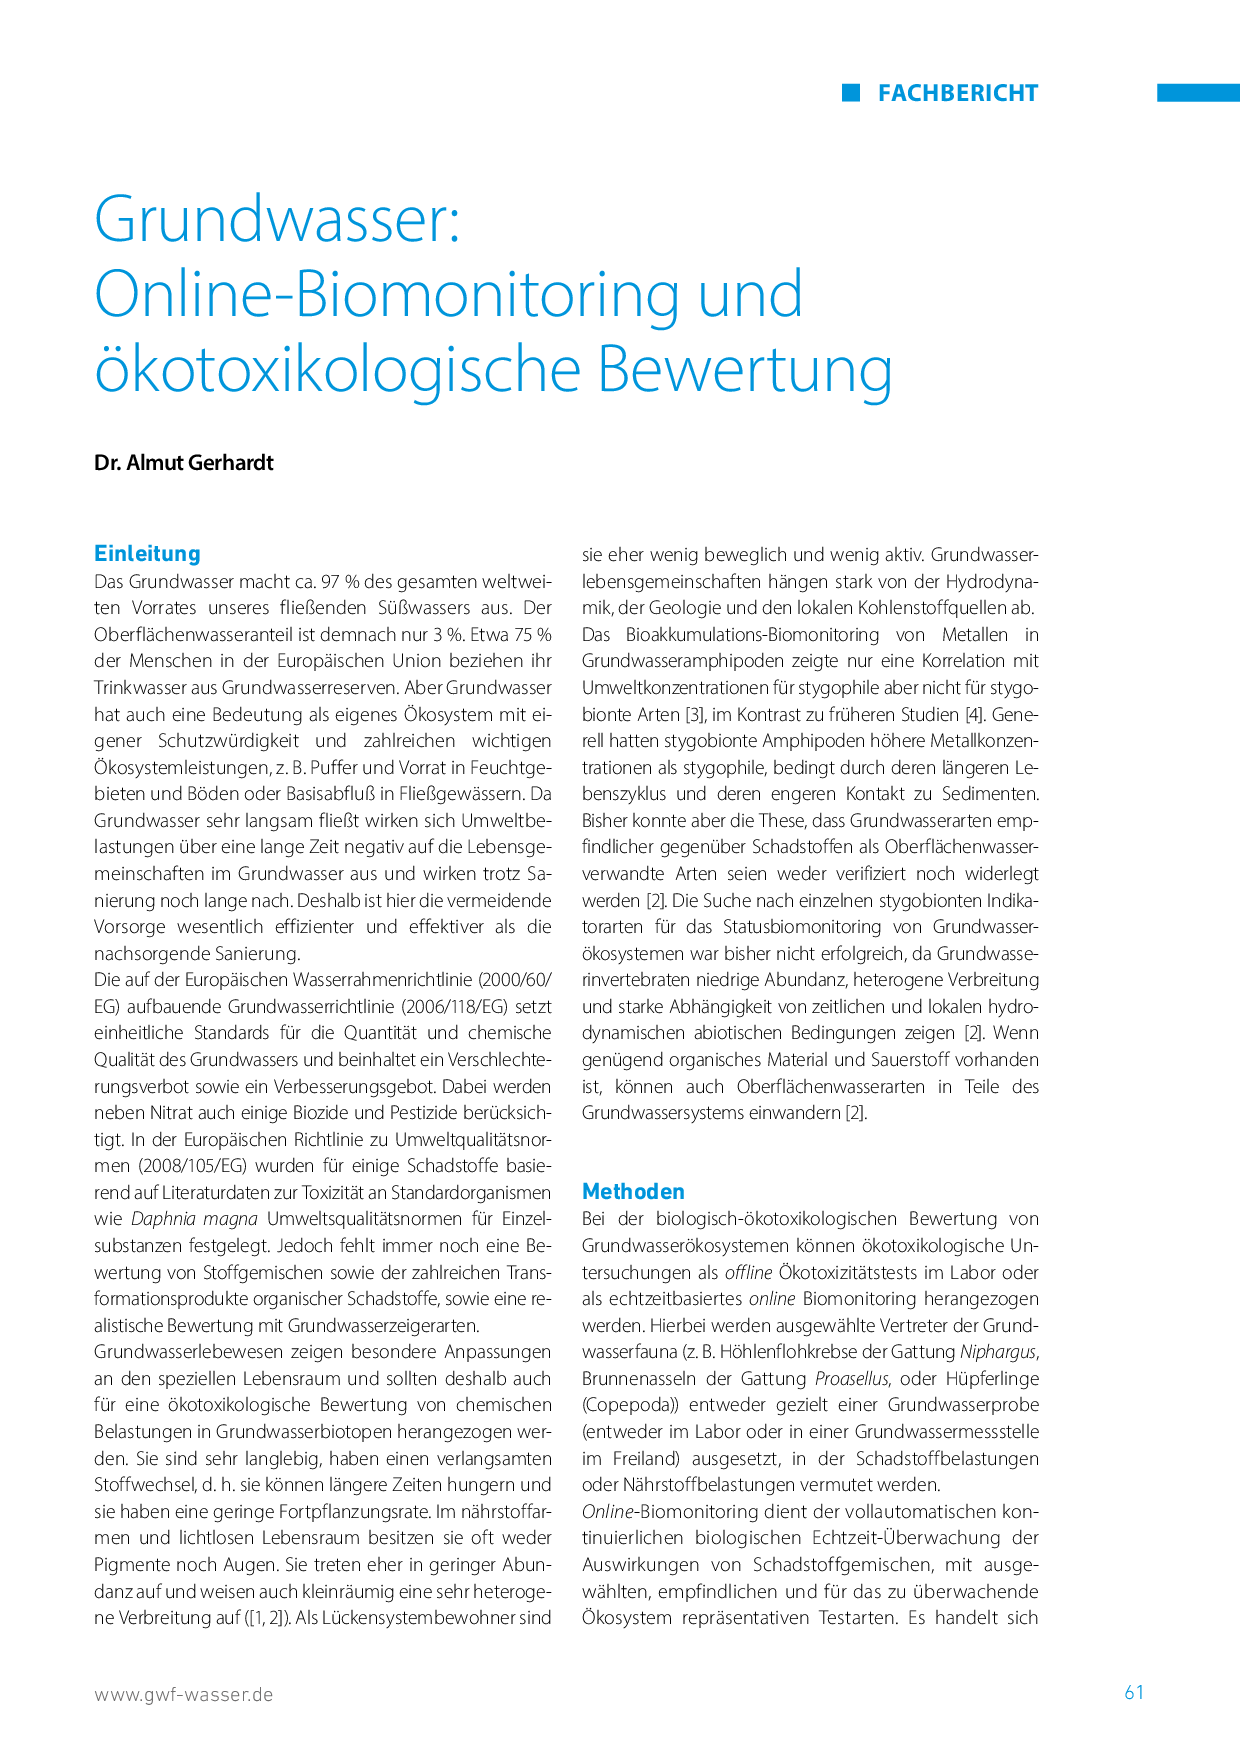 Grundwasser: Online-Biomonitoring und ökotoxikologische Bewertung